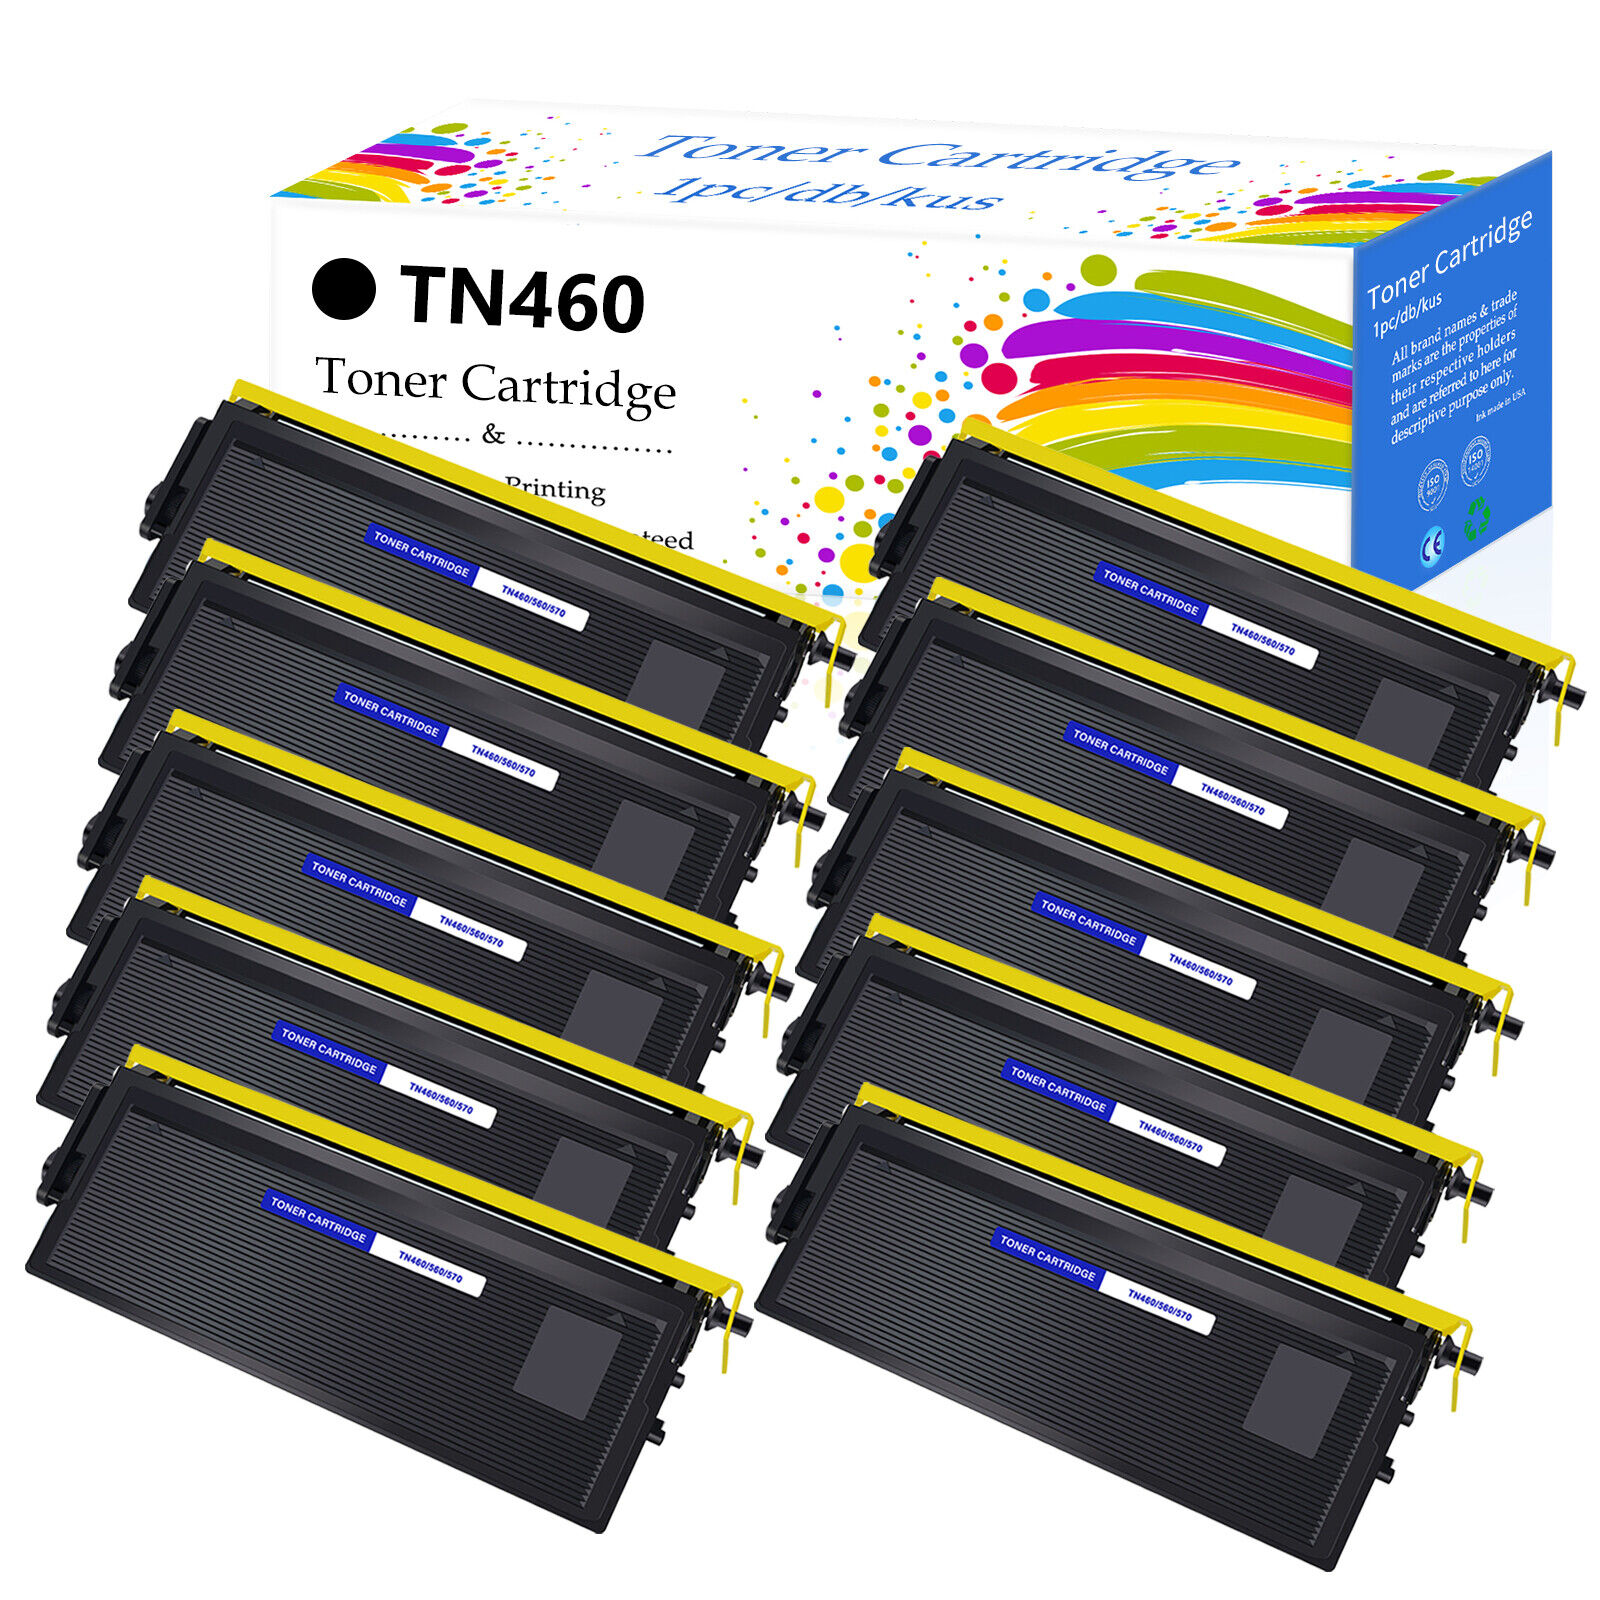 10 PK TN460 Toner Cartridge For Brother HL-1250 HL-1270 HL-1435 HL-1440 MFC-8500